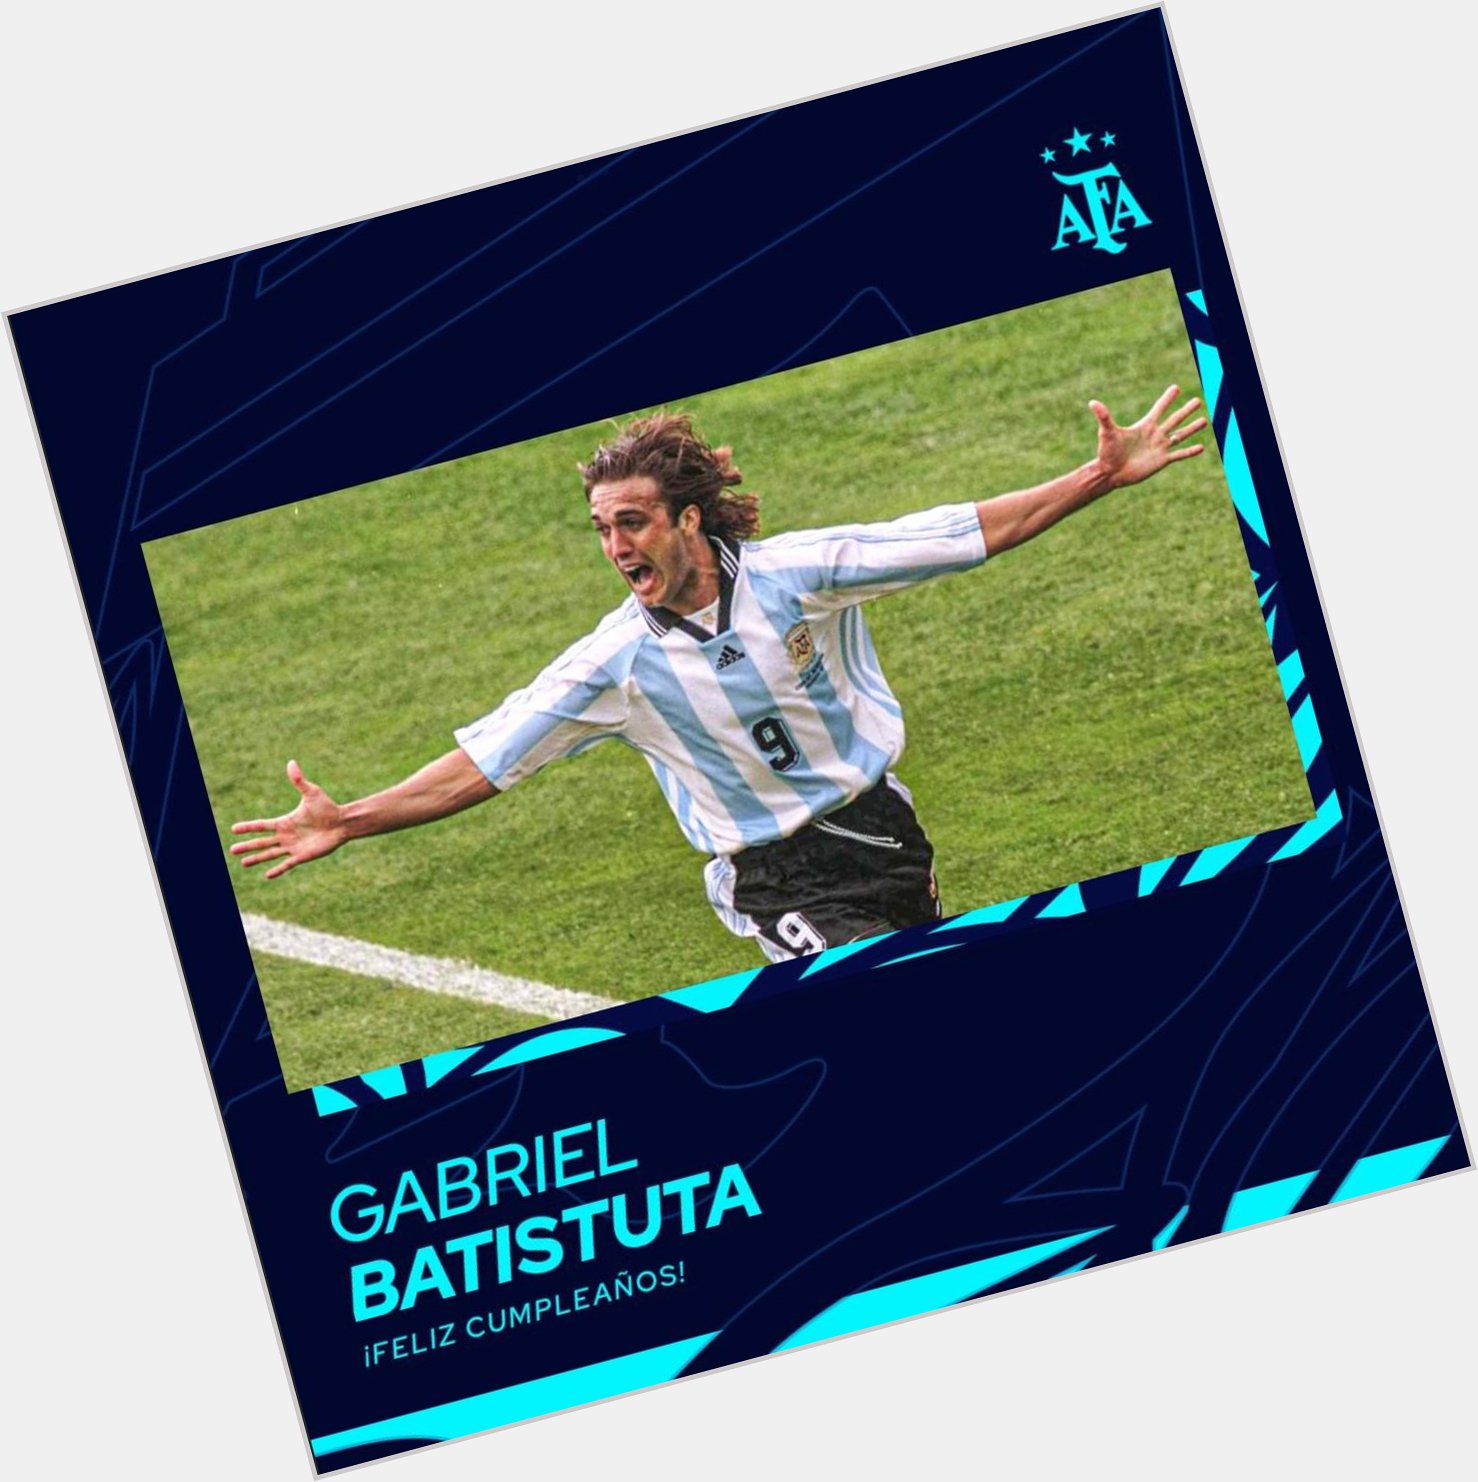 Happy birthday to one of my favorite player Gabriel Batistuta! 